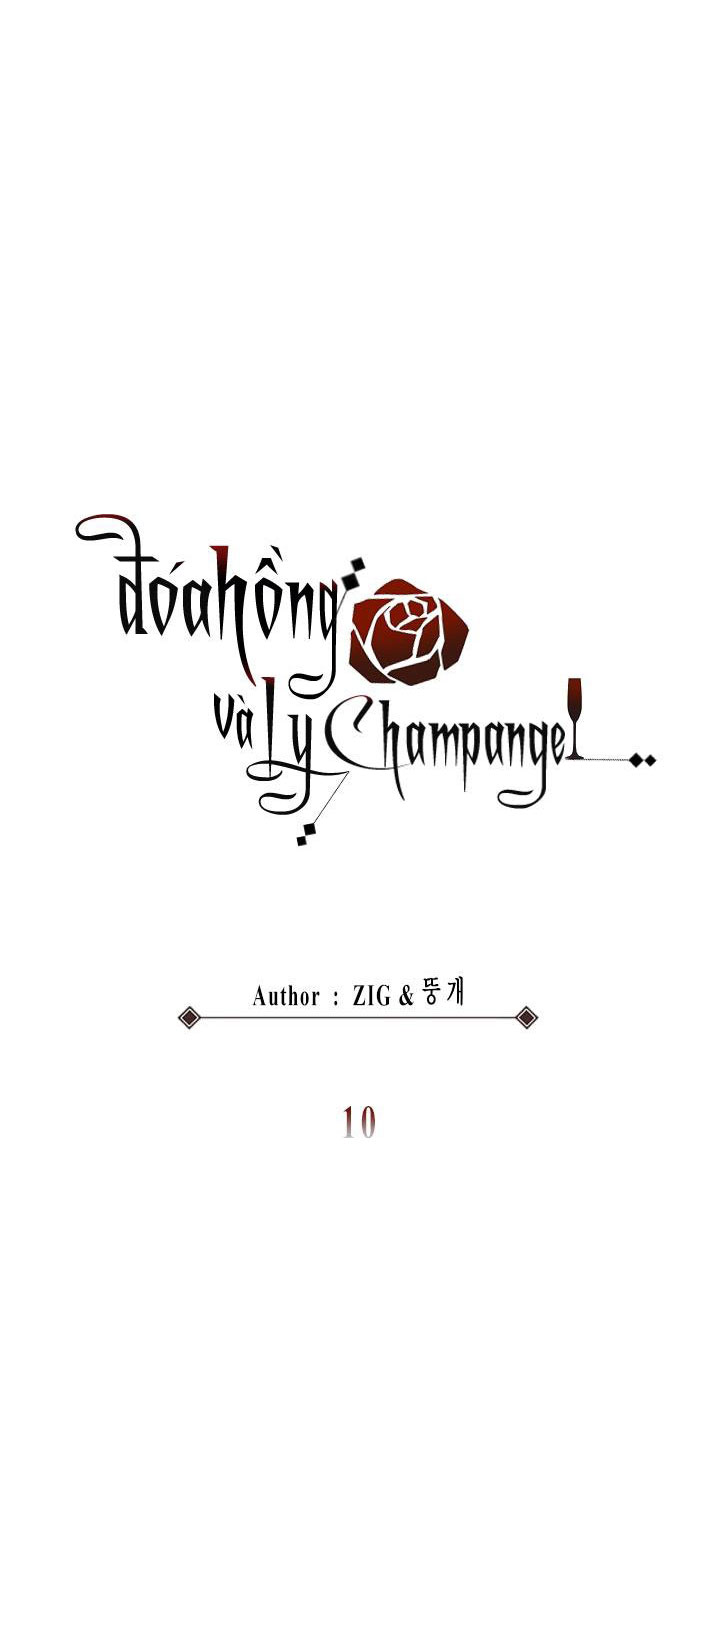 Đoá Hồng Và Ly Champagne Chapter 10 - Trang 10